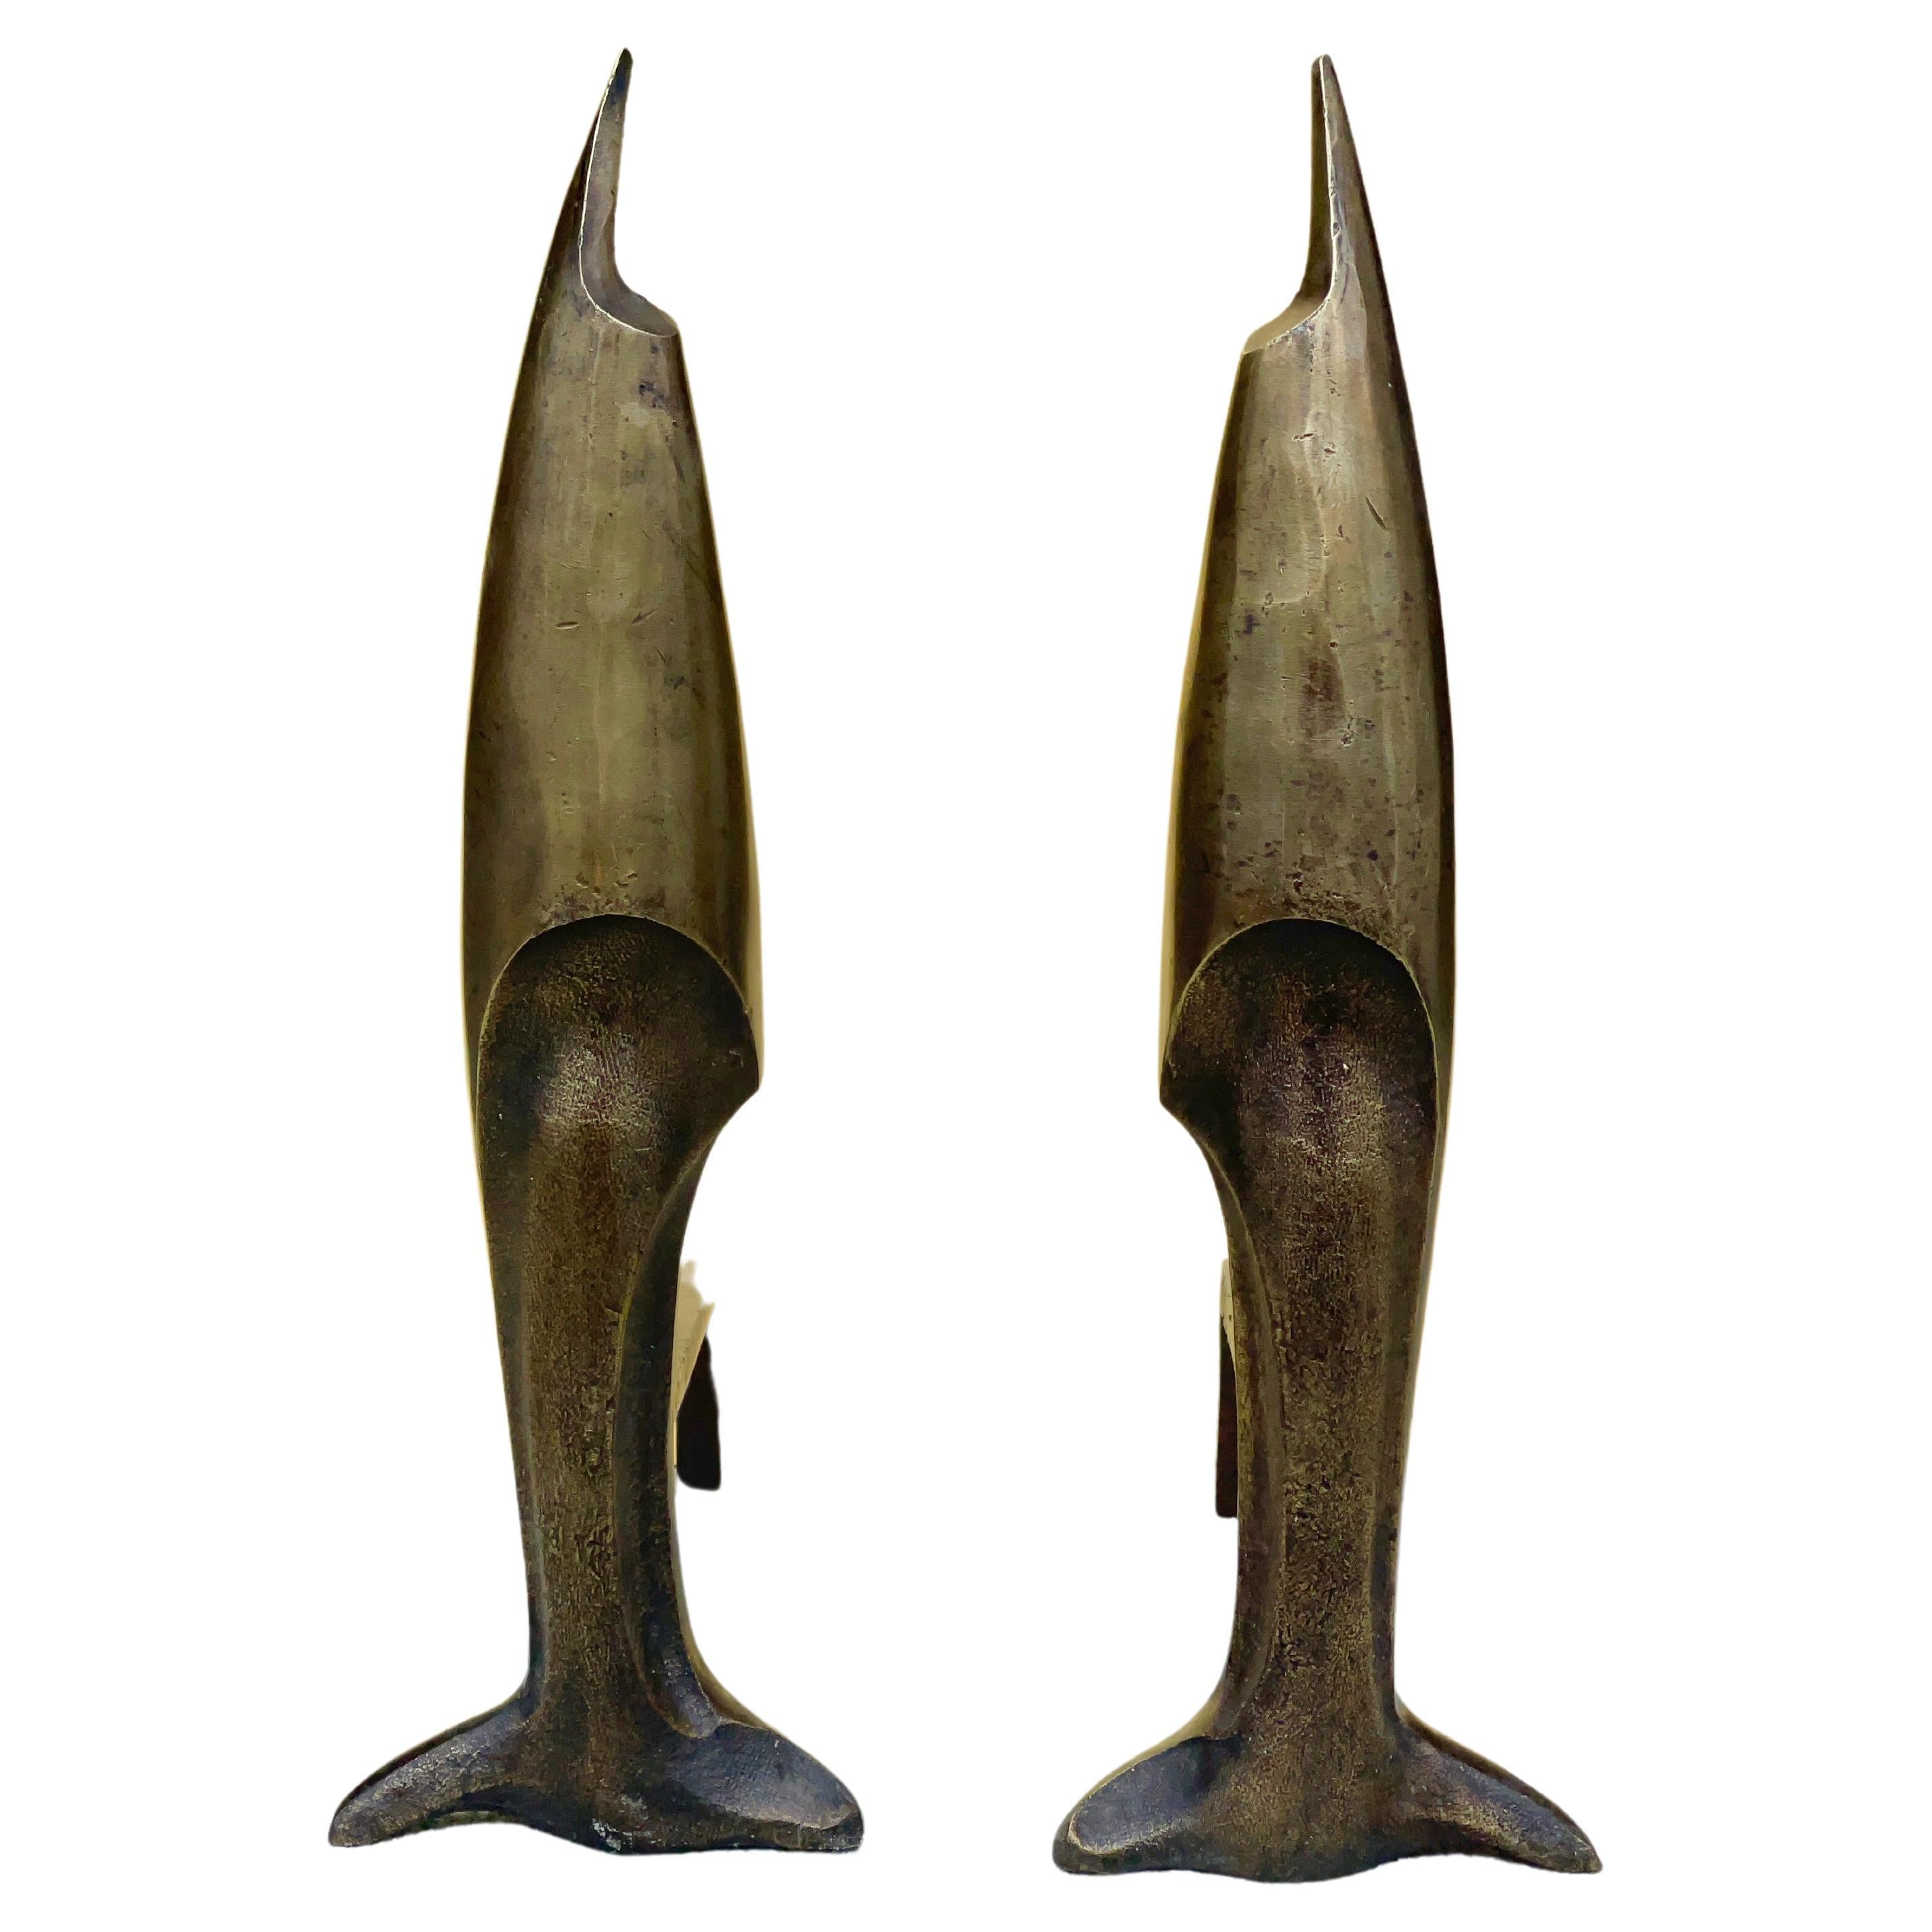 Ein Paar schwere Bronzeguss-Skulpturen in Form eines Schwertfisches oder Delphins nach einem Entwurf von Pierre Emile Legrain aus dem Jahr 1926.
Offensichtlich unsigniert und unmarkiert.
Original gelenkige Gusseisenhunde.
Präsentiert wie gefunden